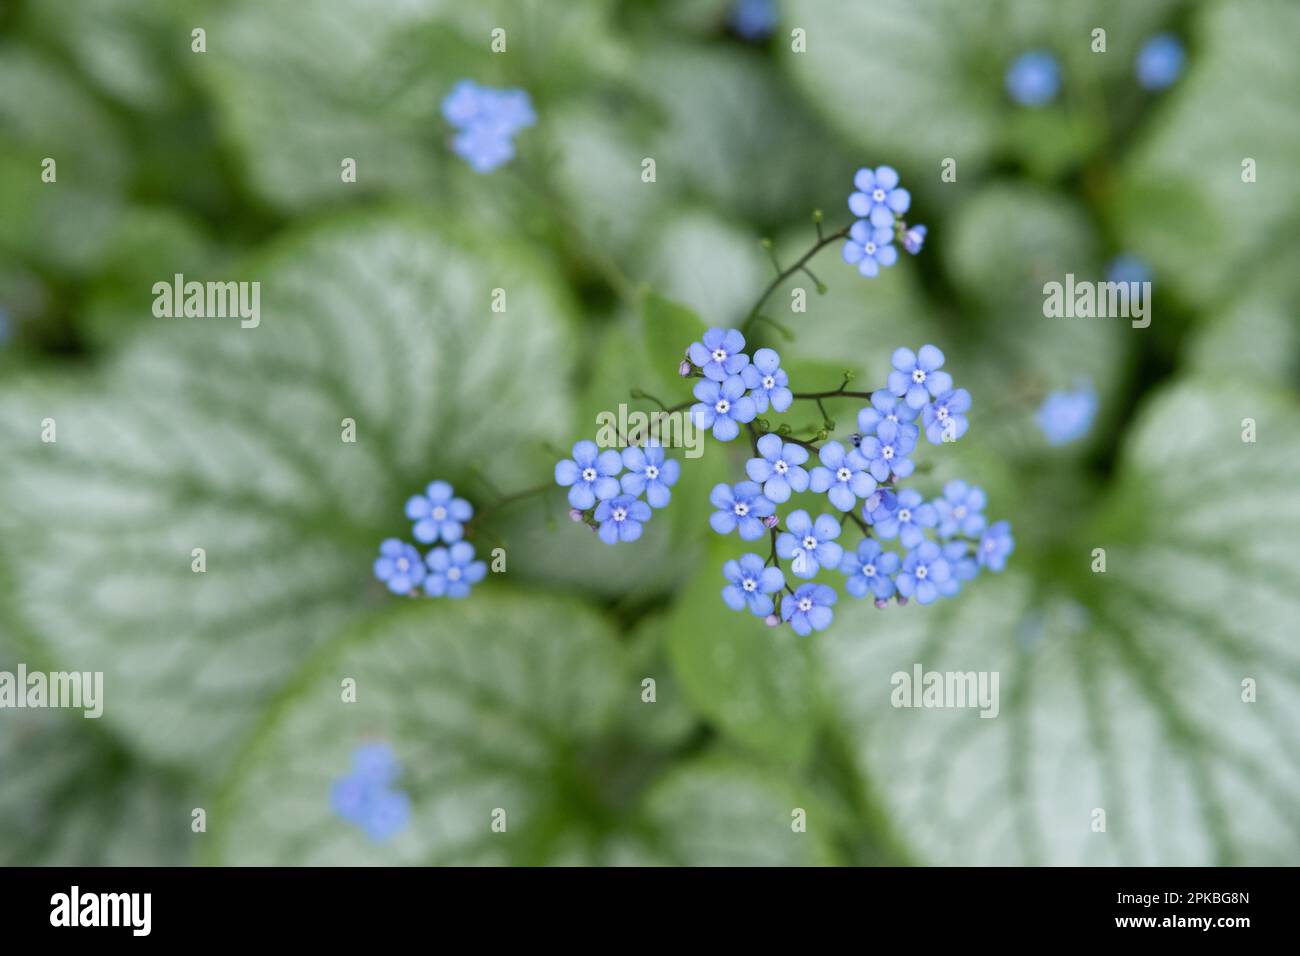 Beaucoup de belles, petites et élégantes fleurs bleues avec des feuilles vertes du jardin du Dr Neil à Édimbourg, en Écosse. Gros plan avec bokeh. Ressort s Banque D'Images